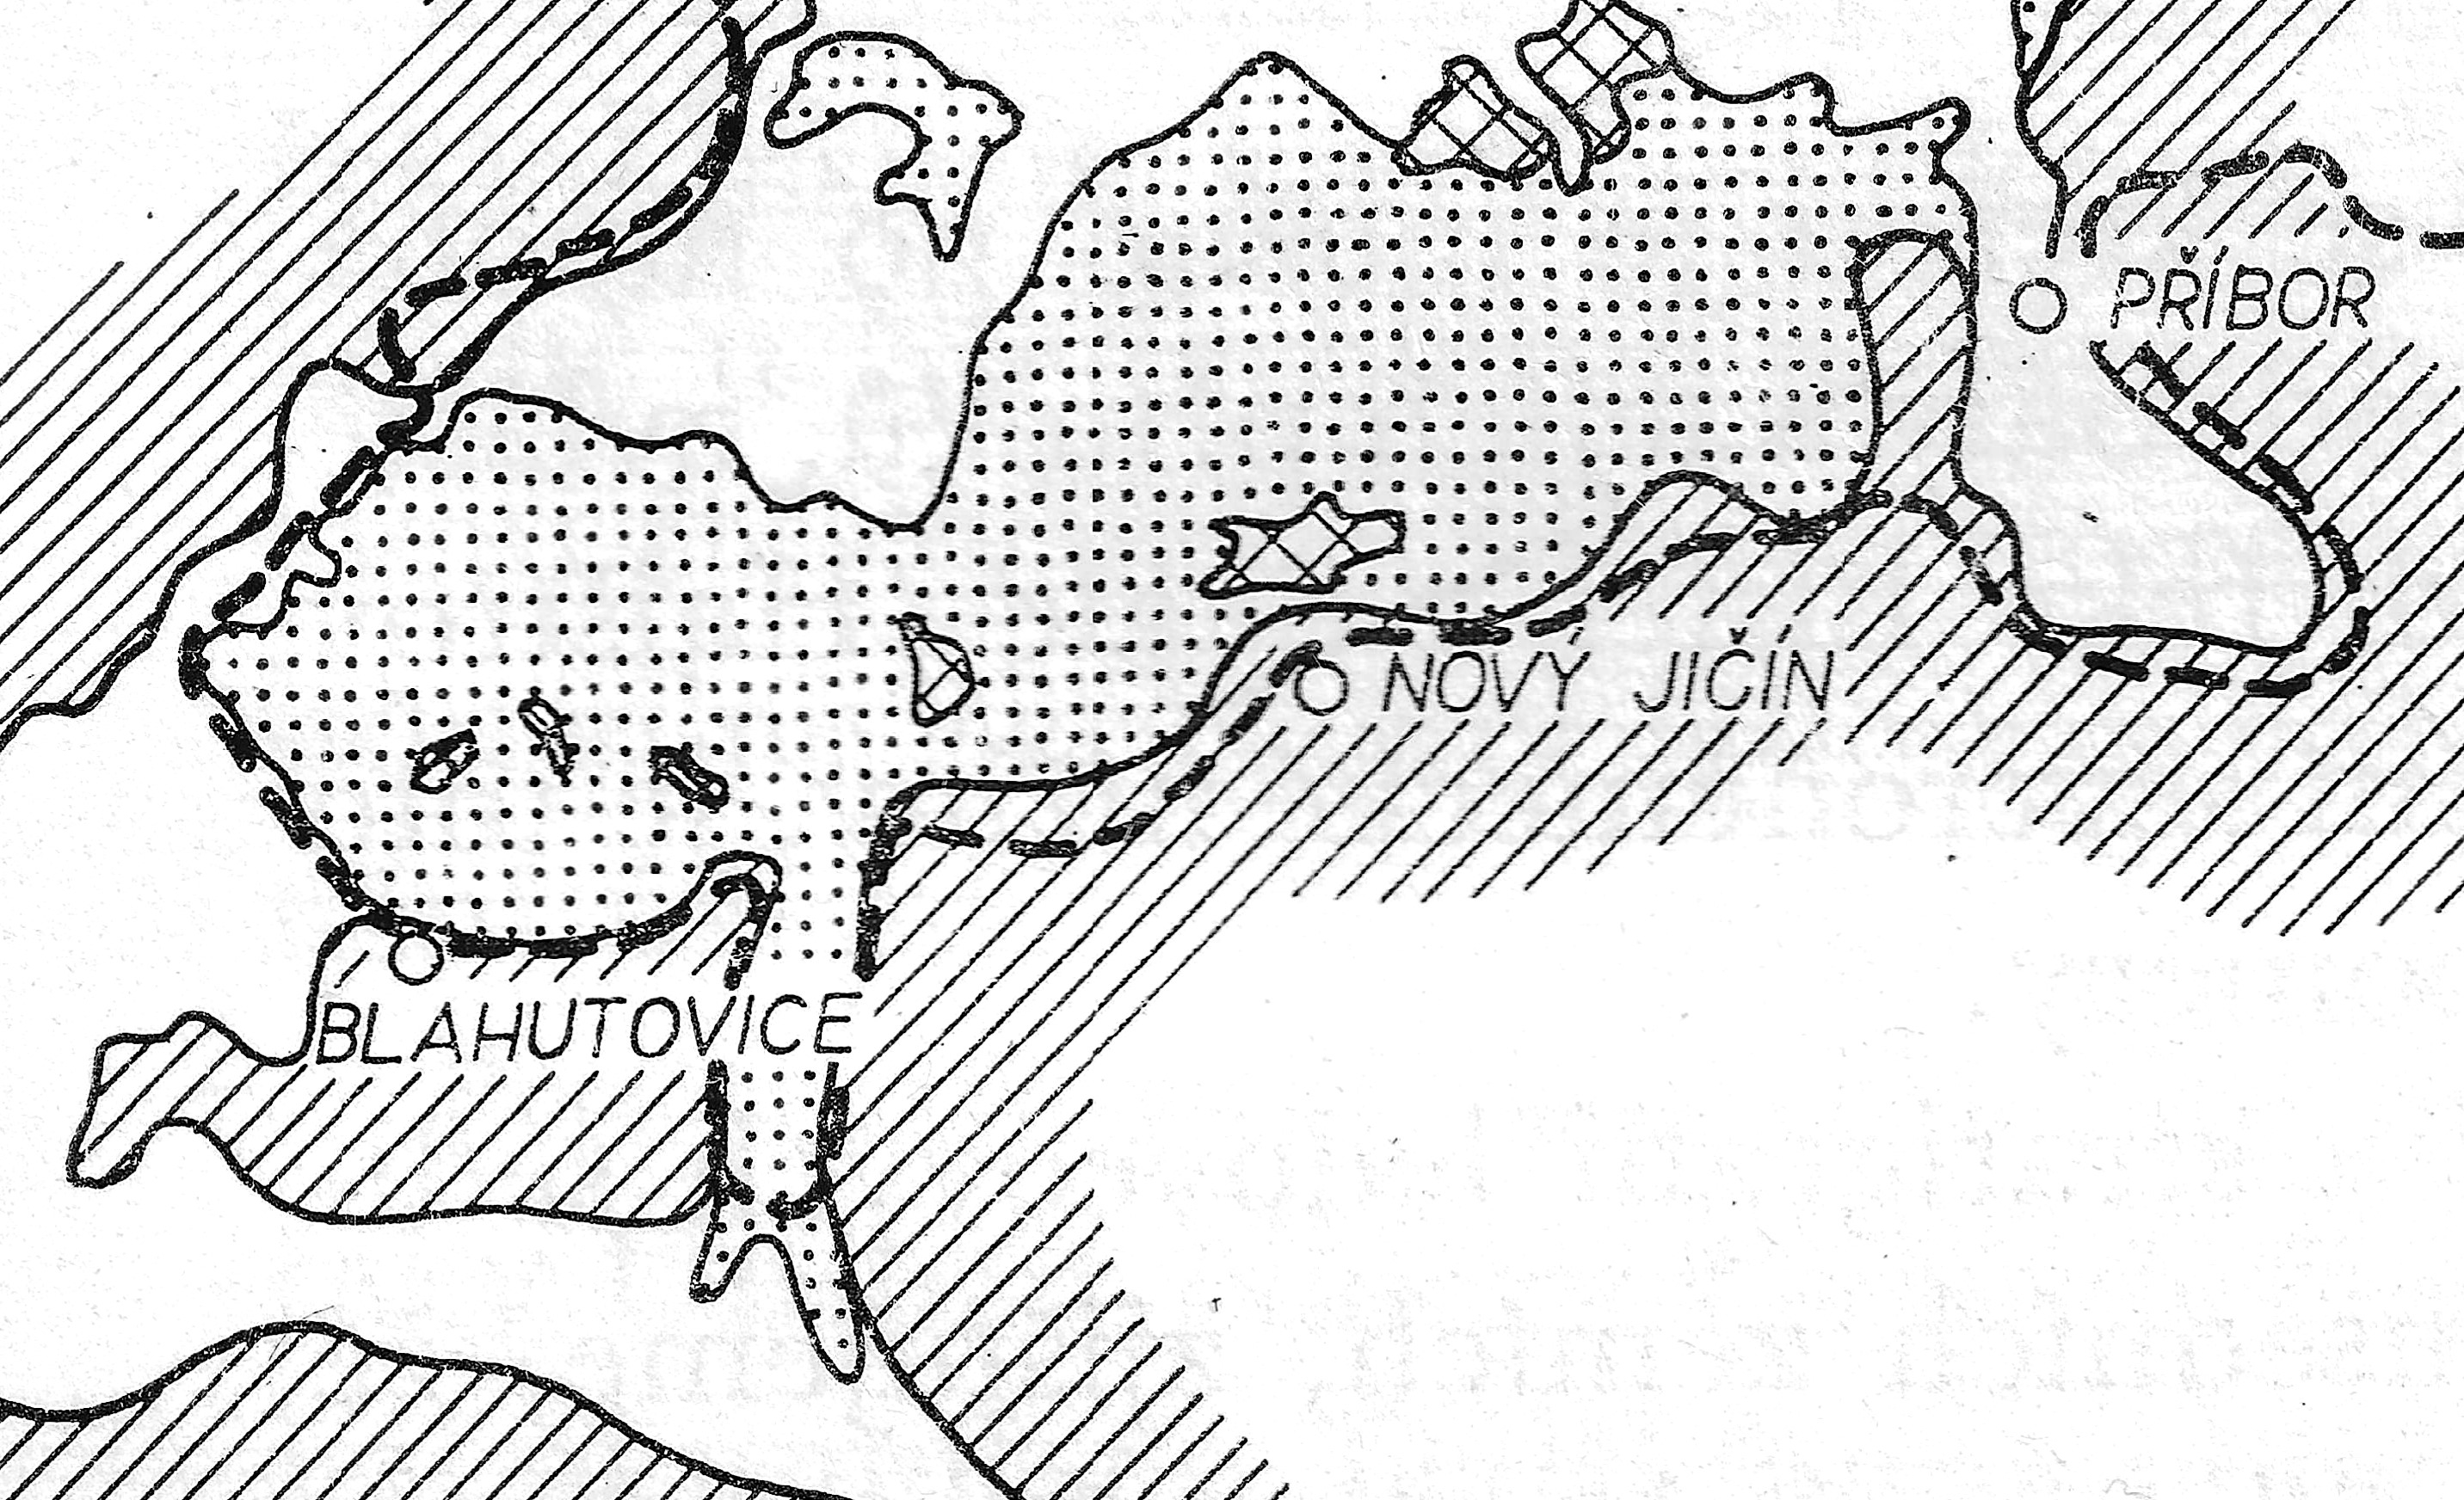 Nejzazší hranice sálského zalednění v Moravské bráně  podle Macouna a kol. (1965). Zobrazena plocha 19,5x32 km. Nejjižnější hranice maximálního rozsahu zalednění (přerušovaná čára) je 6 km JV od Blahutovic a  10 km JZ od Nového Jičína. Jižní okraj za